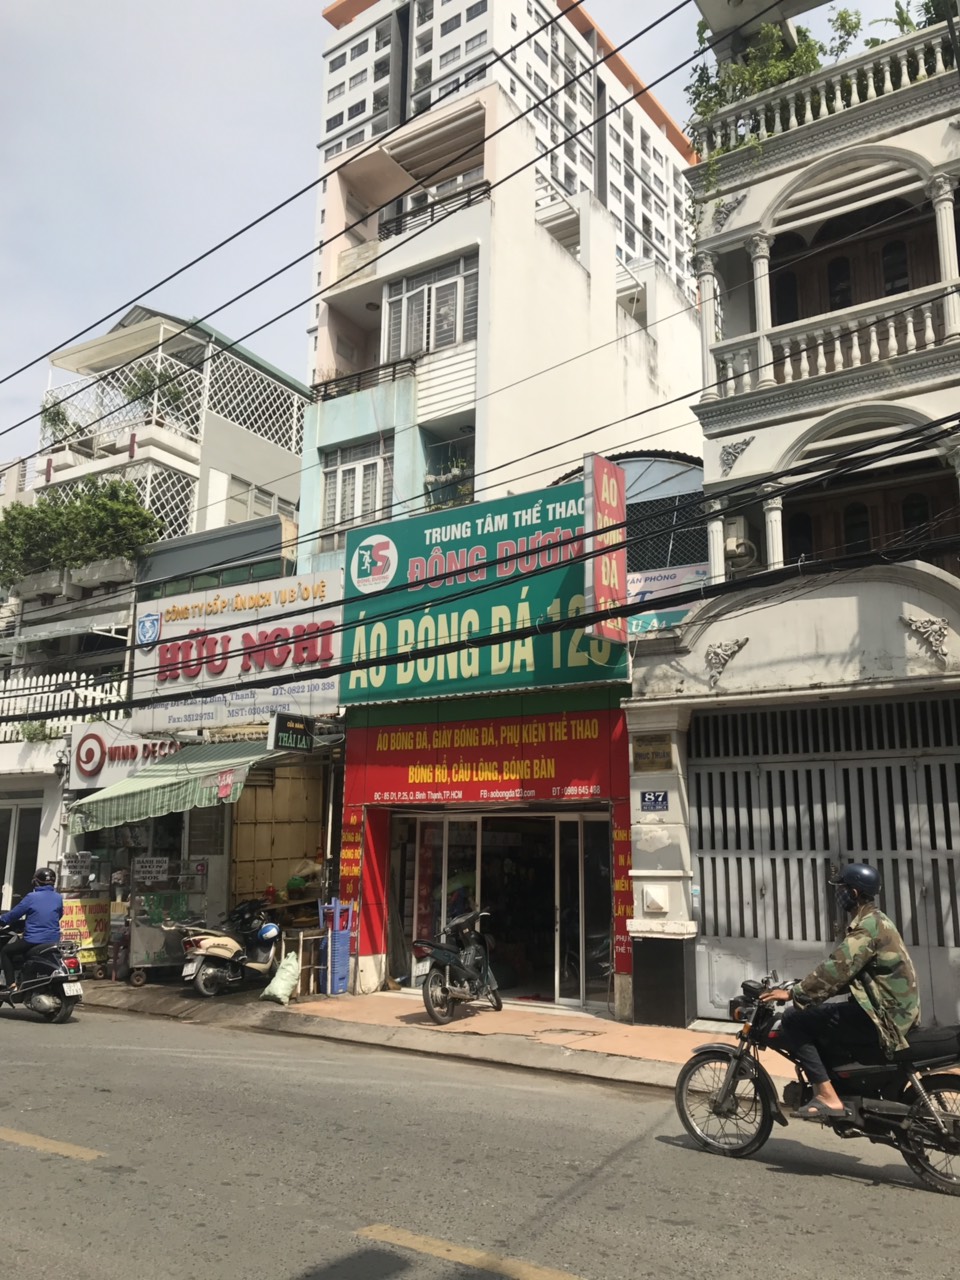 Bán nhà 2 mặt Đường Xa lộ Hà Nội và Trương Văn Thành,Phường Hiệp Phú Quận 9 Gía 220 tỷ thương lượng